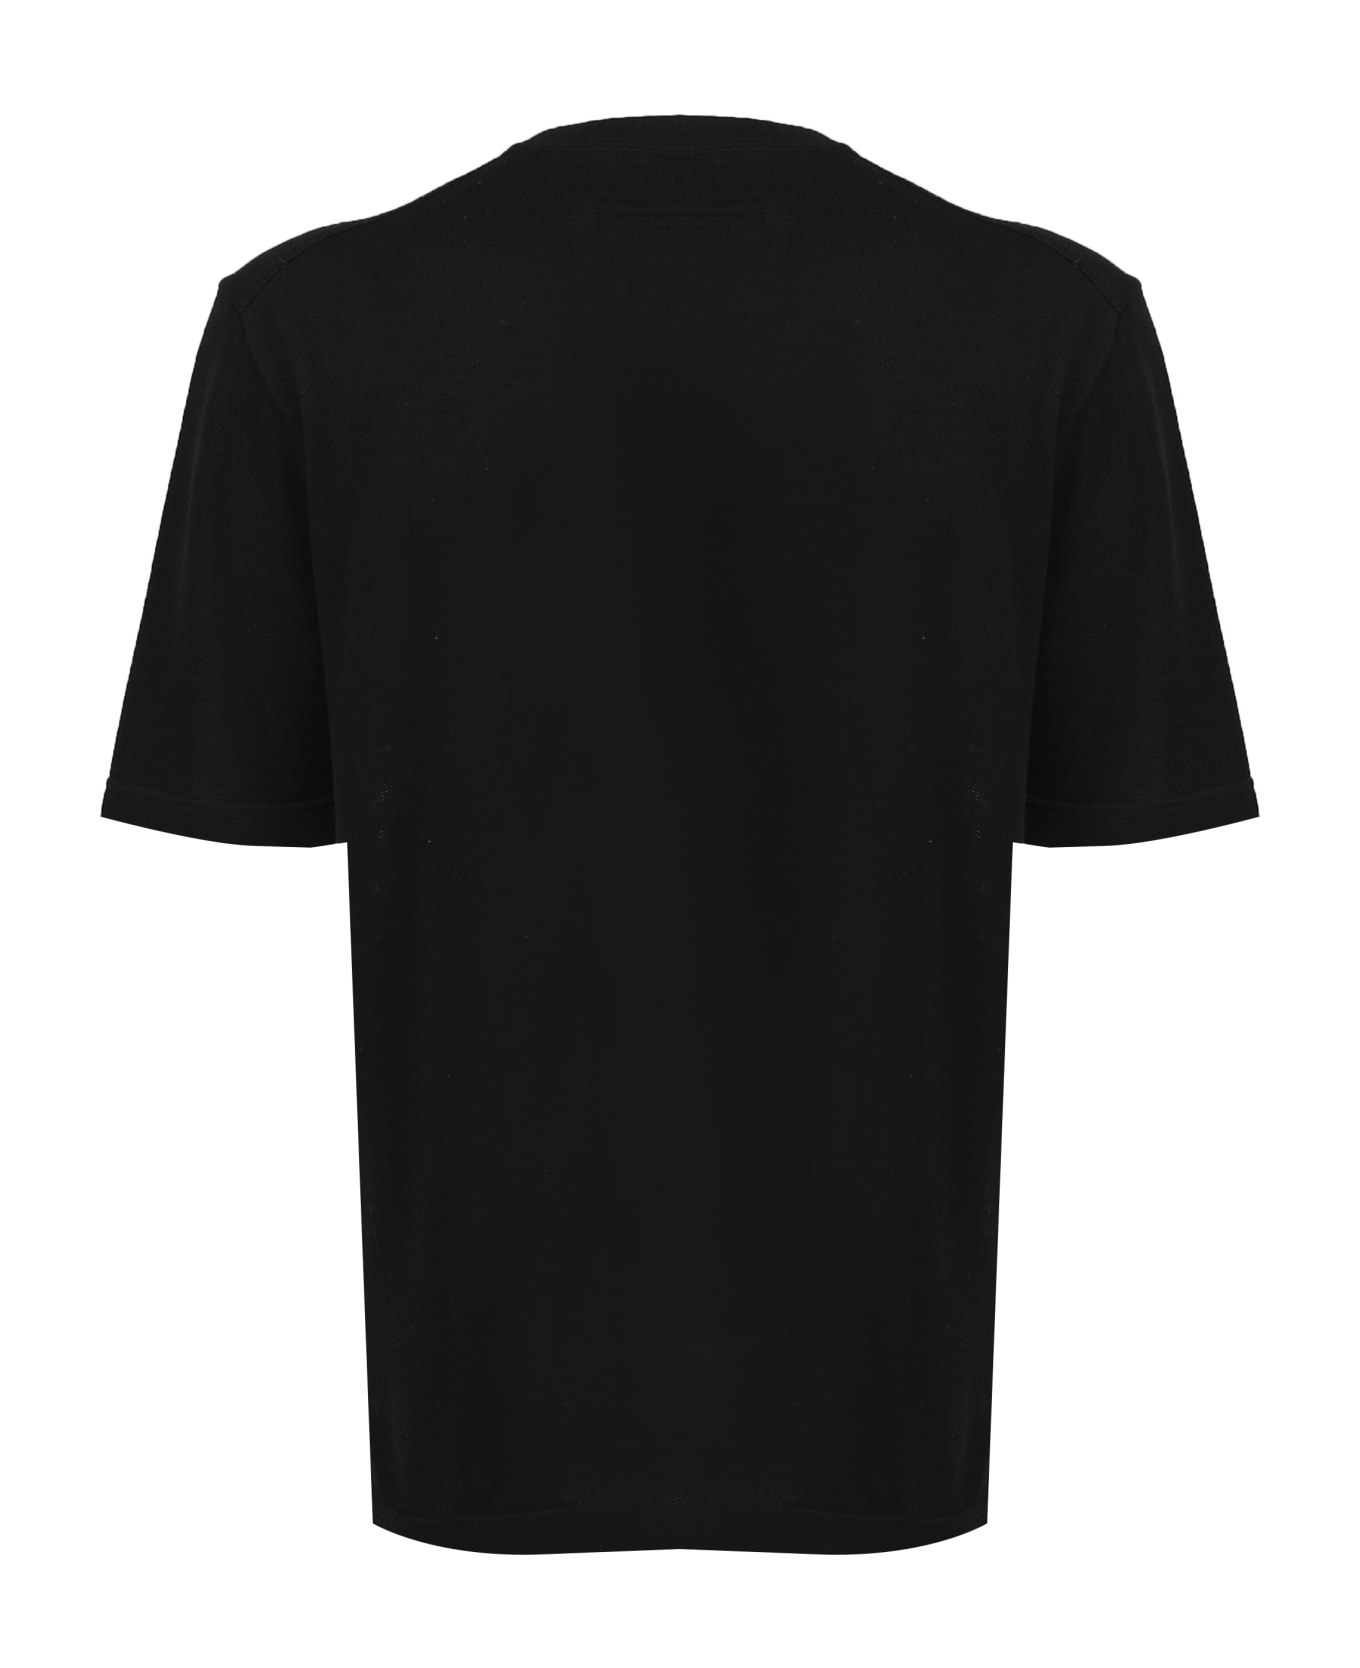 Zegna Cotton T-shirt - Black シャツ